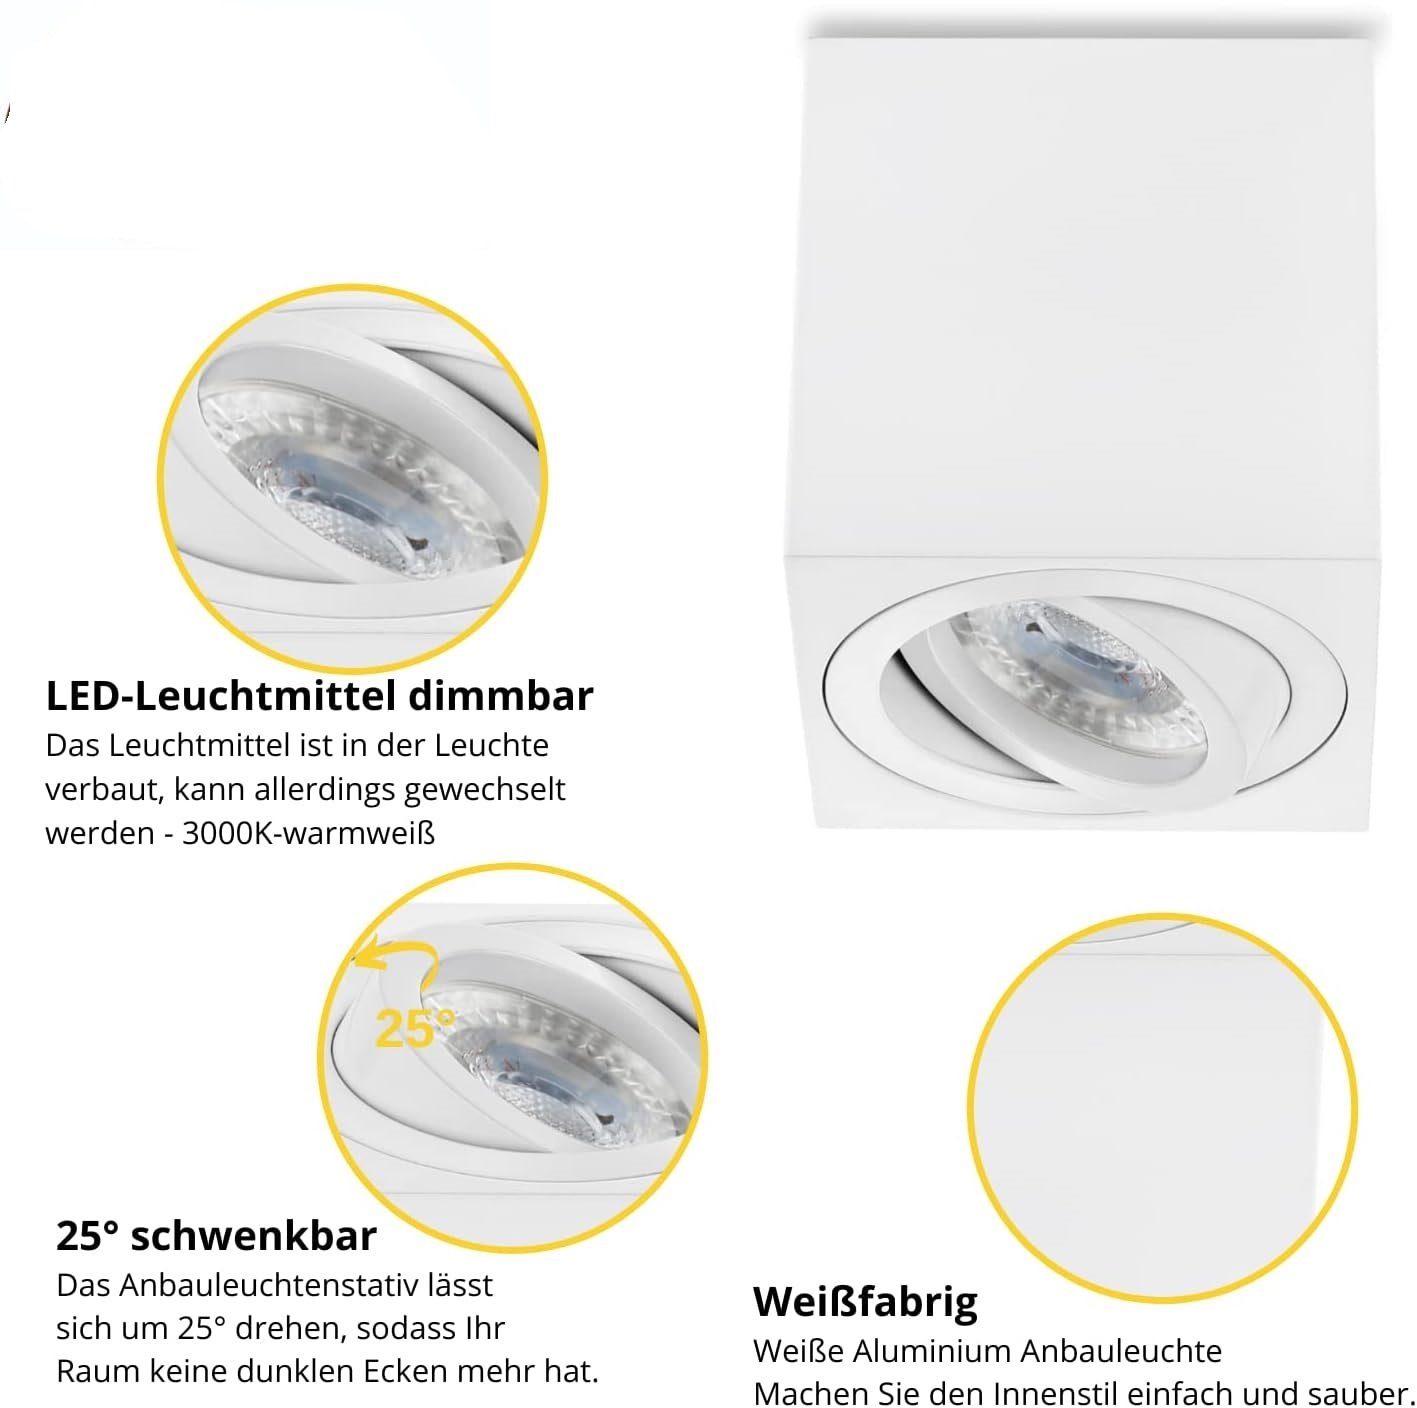 Sweet LED LED Deckenspots spots Deckenaufbauleuchte, 7W Decken Leuchtmittel wechselbar, Warmweiß, weiß dimmbar Aluminium Deckenspot Aufbaustrahler, strahler, eckig GU10 Aufbauspots